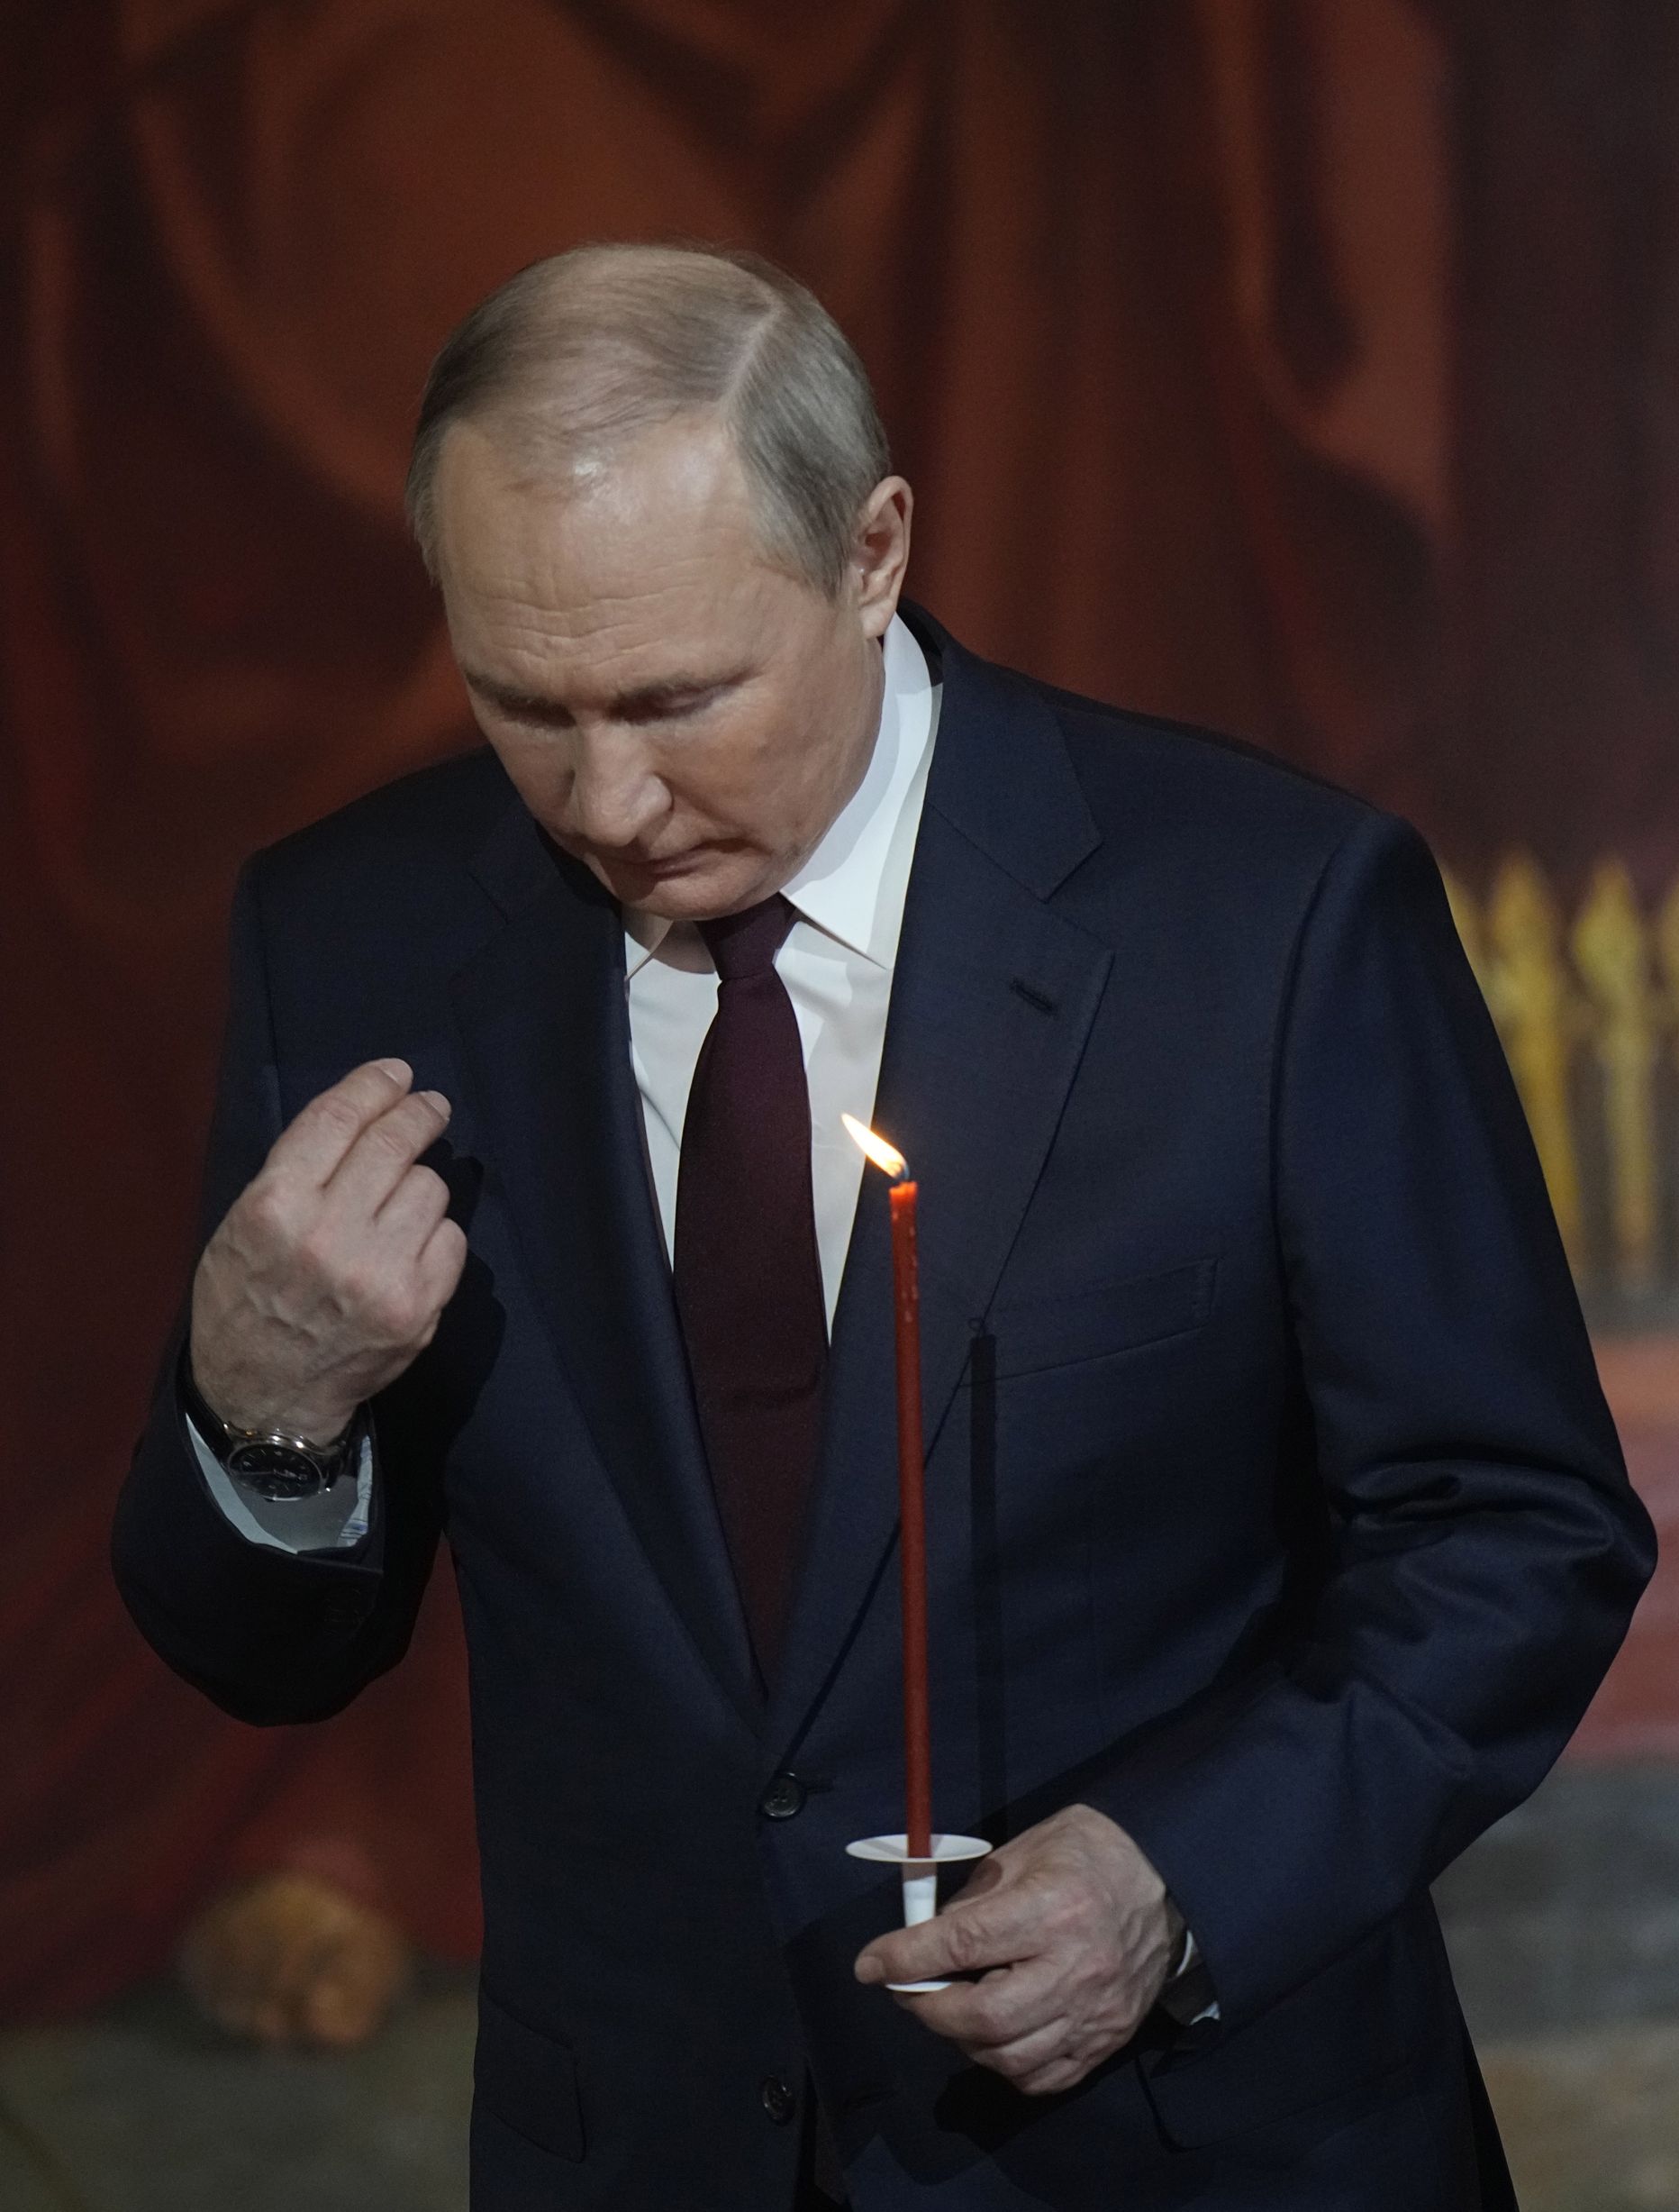 Venemaa president Vladimir Putin 23. aprillil 2022 Moskvas Päästja Kristuse katedraalis õigeusu lihavõttejumalateenistusel